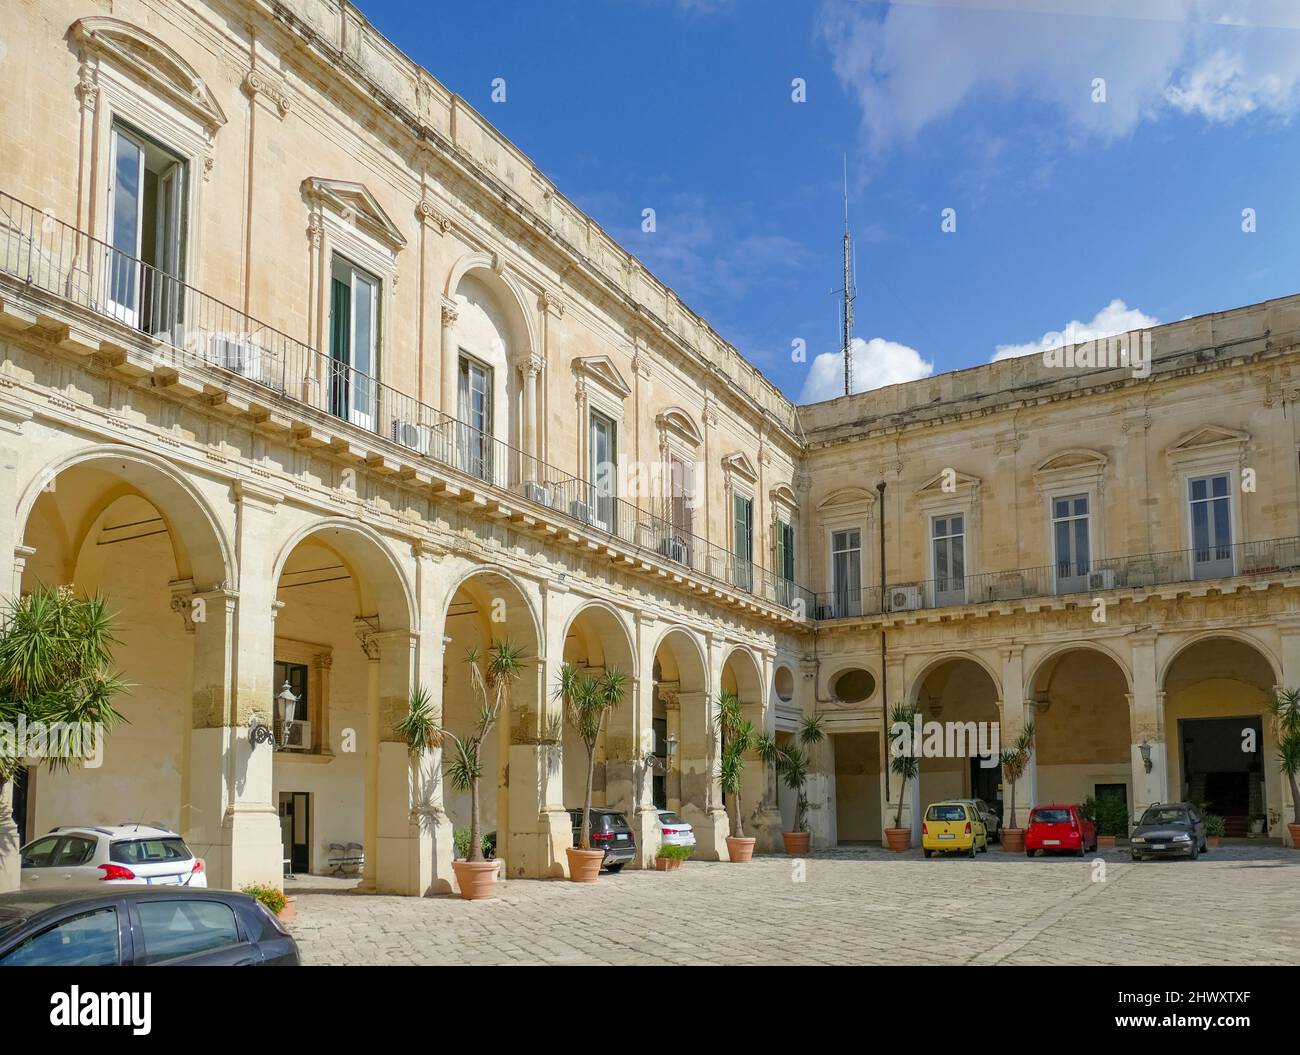 Palazzo della Provincia in Lecce, a city in Apulia, Italy Stock Photo